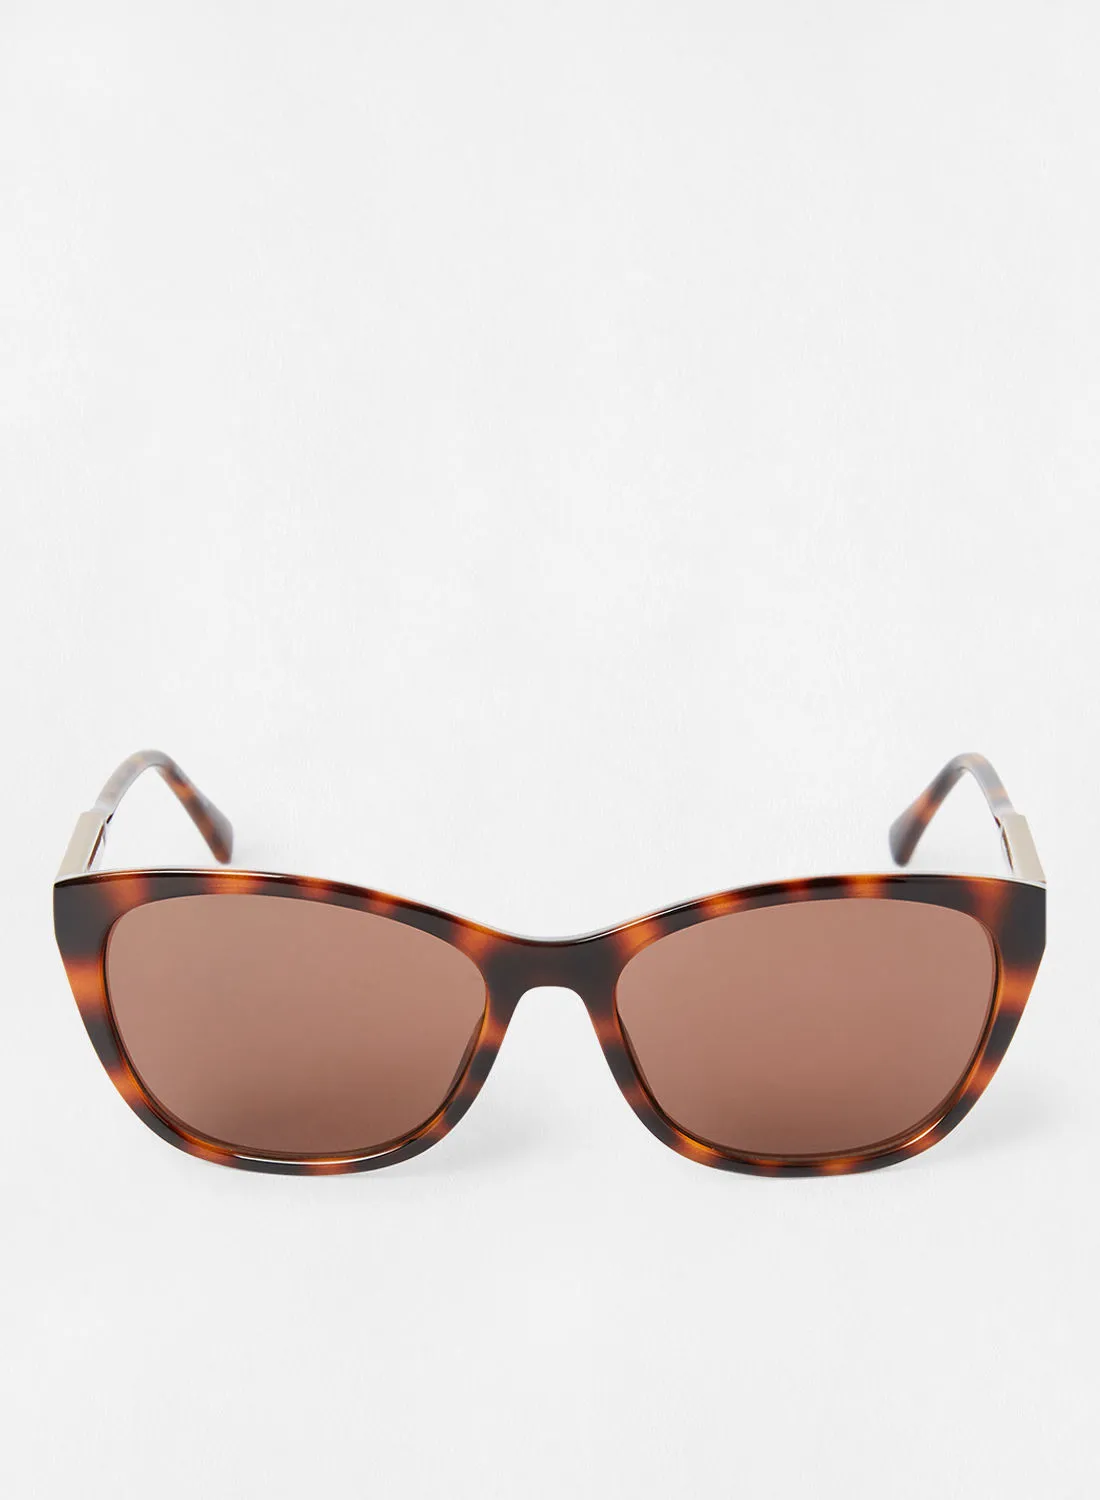 Calvin Klein Jeans Women's UV Protection Cat Eye Sunglasses CKJ20500S